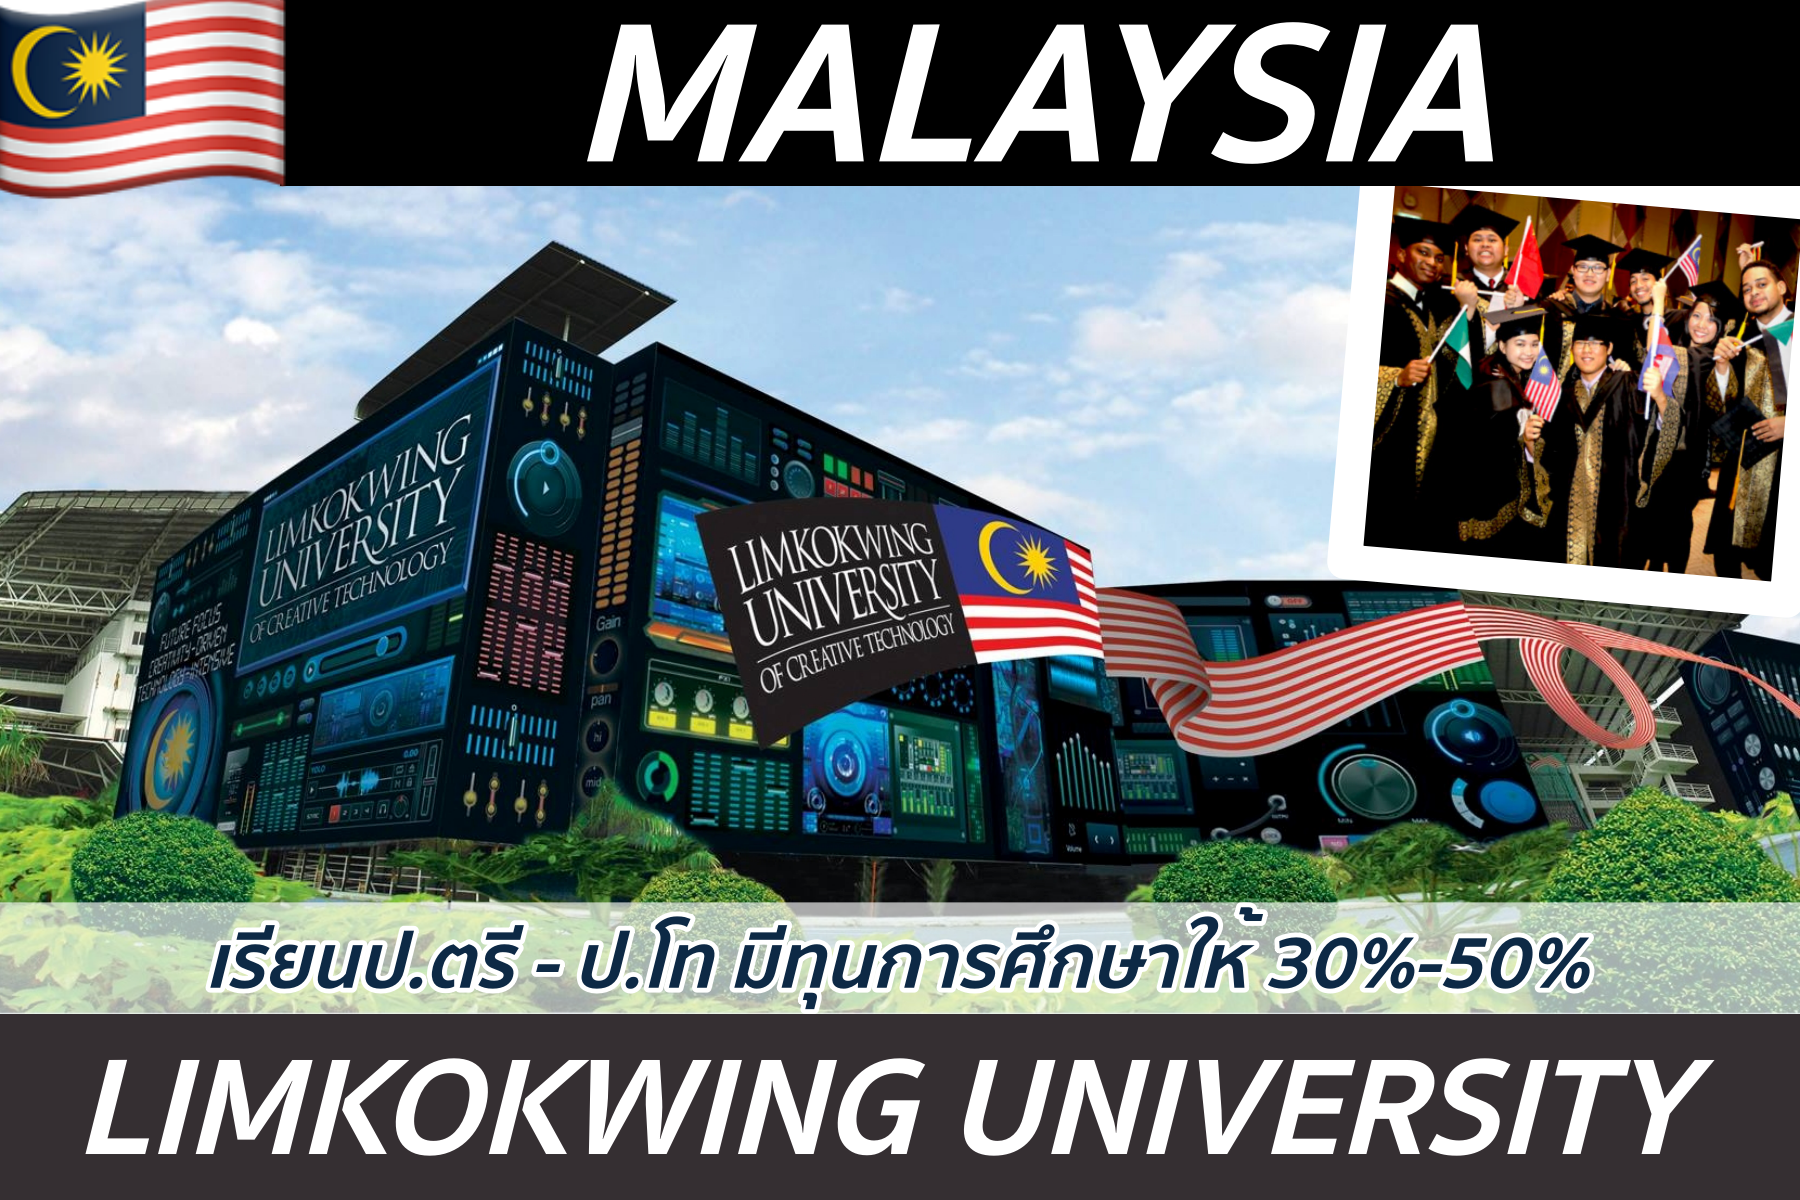 ป.ตรี-ป.โท-MBA ที่ Limkokwing University, Malaysia ค่าเรียนไม่แพง *มีทุนการศึกษา 30-50%*